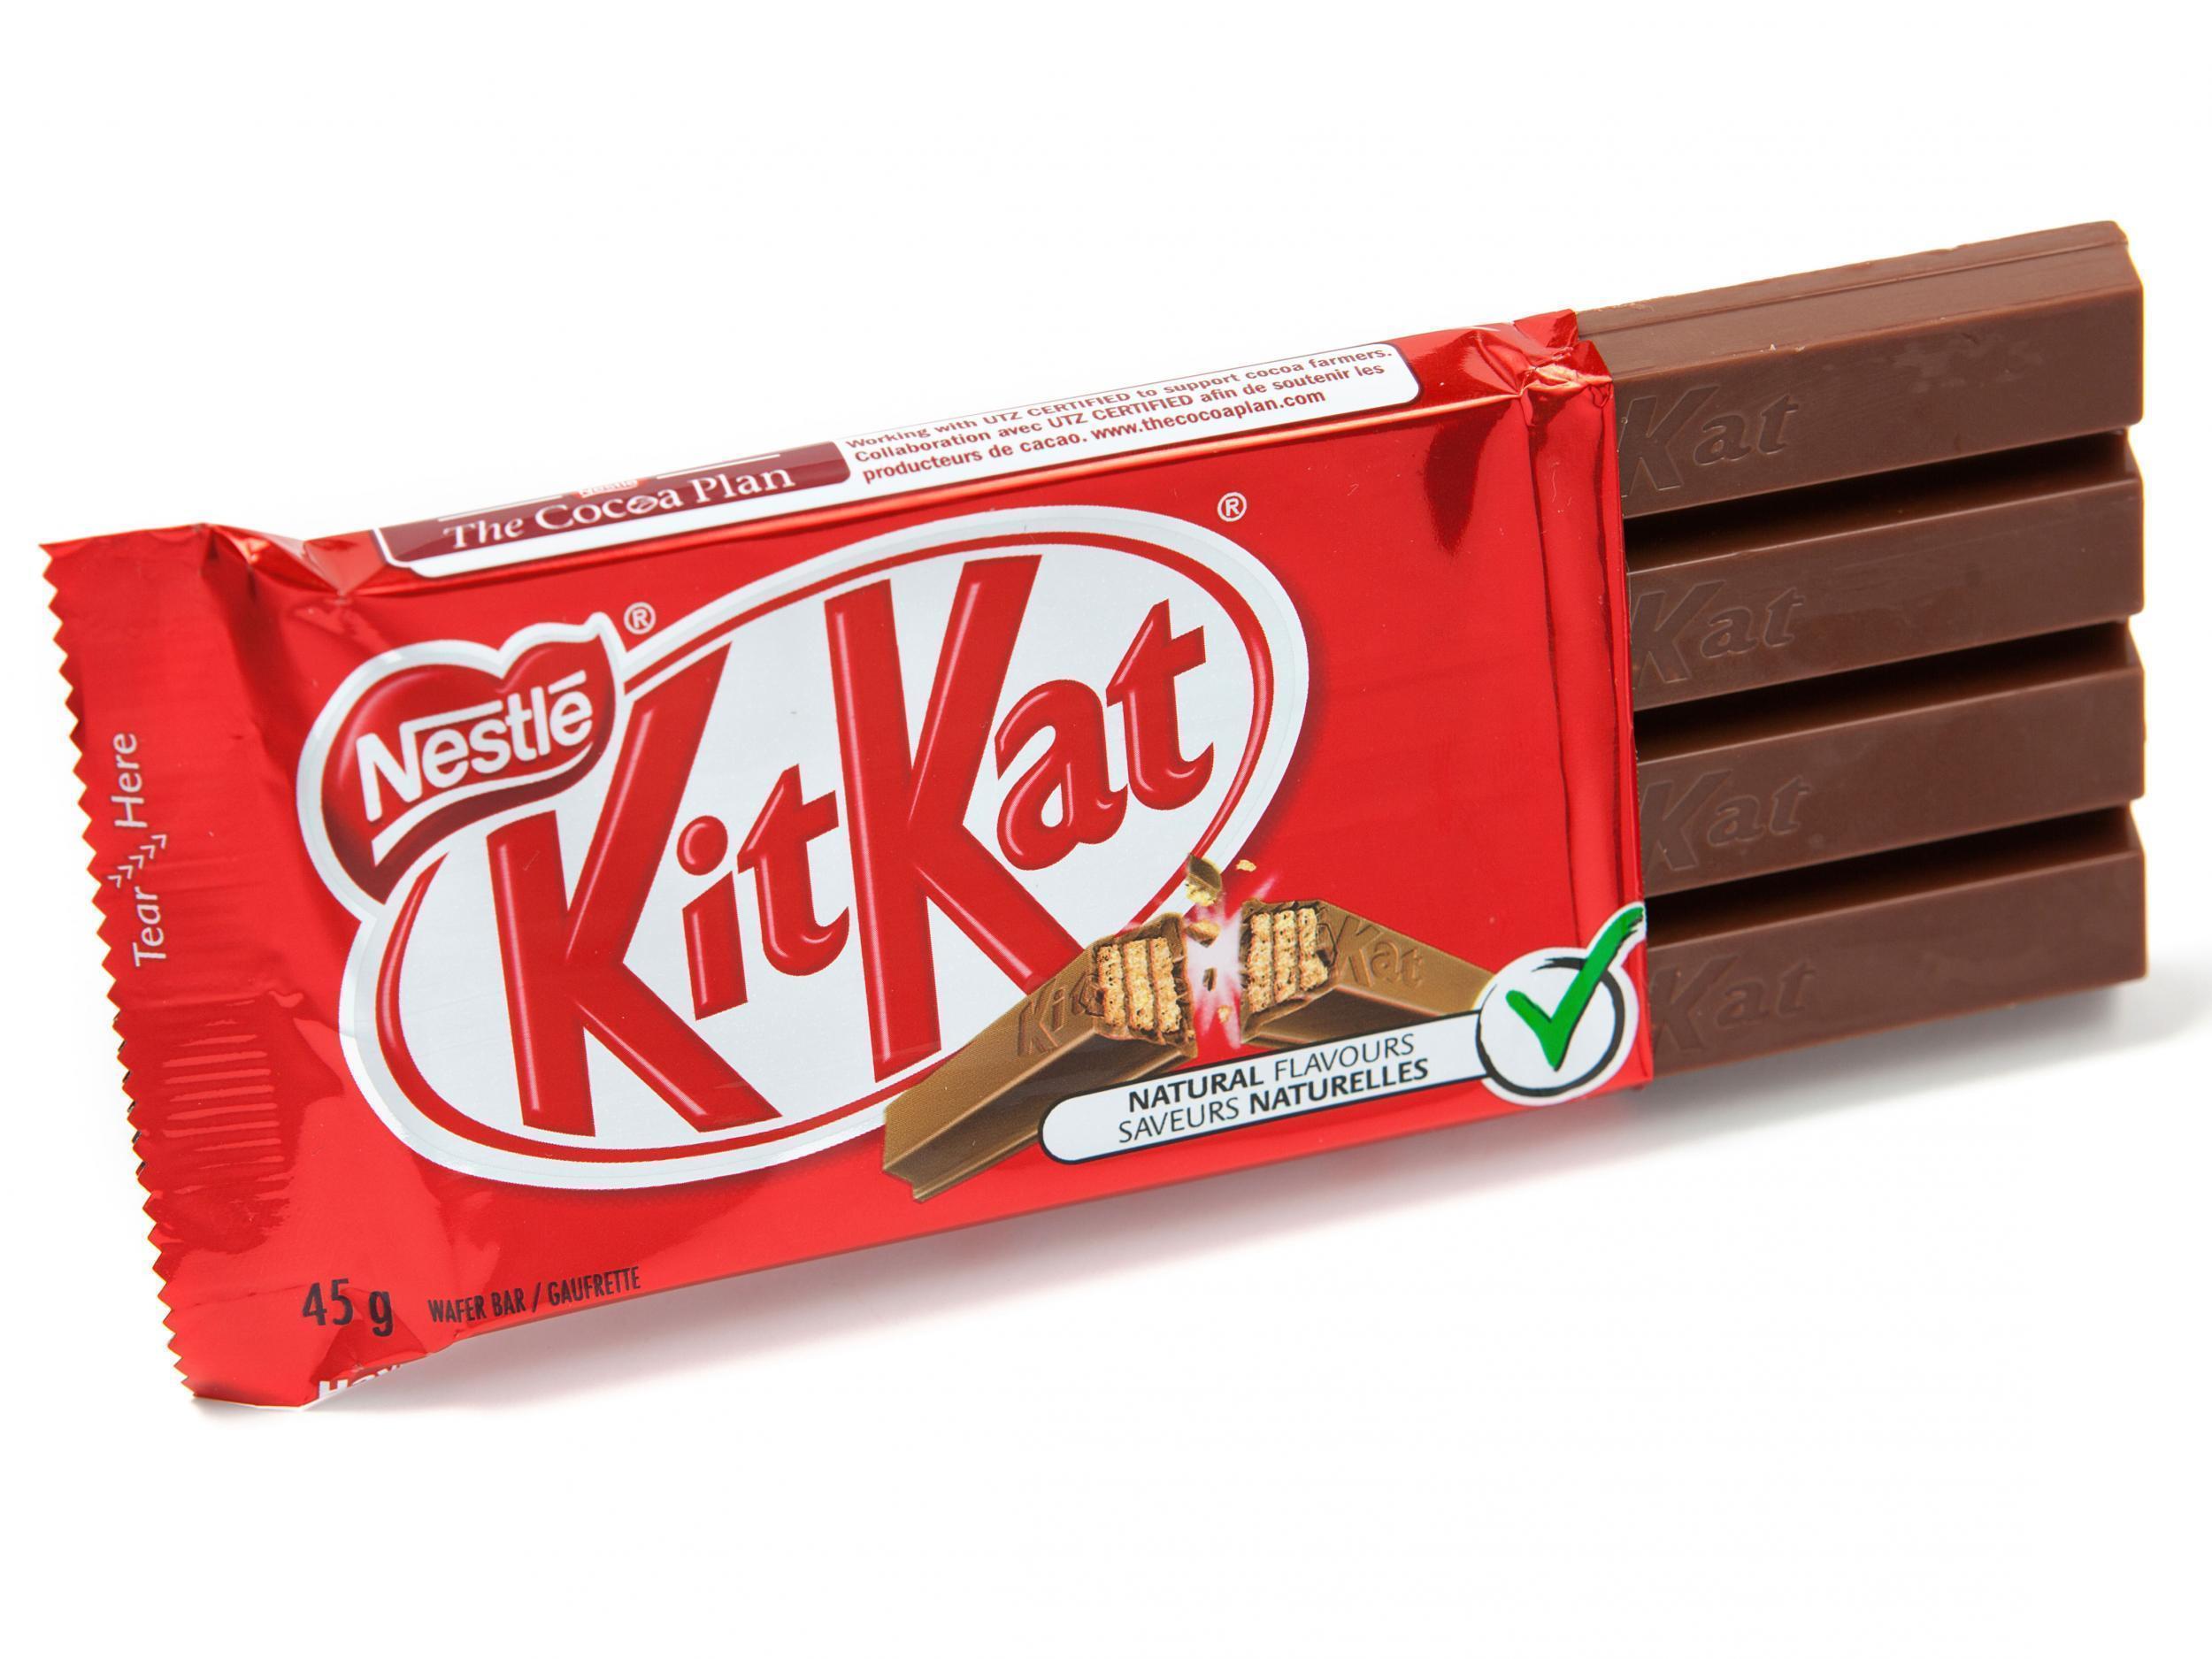 KitKat-Four-finger.jpg. 